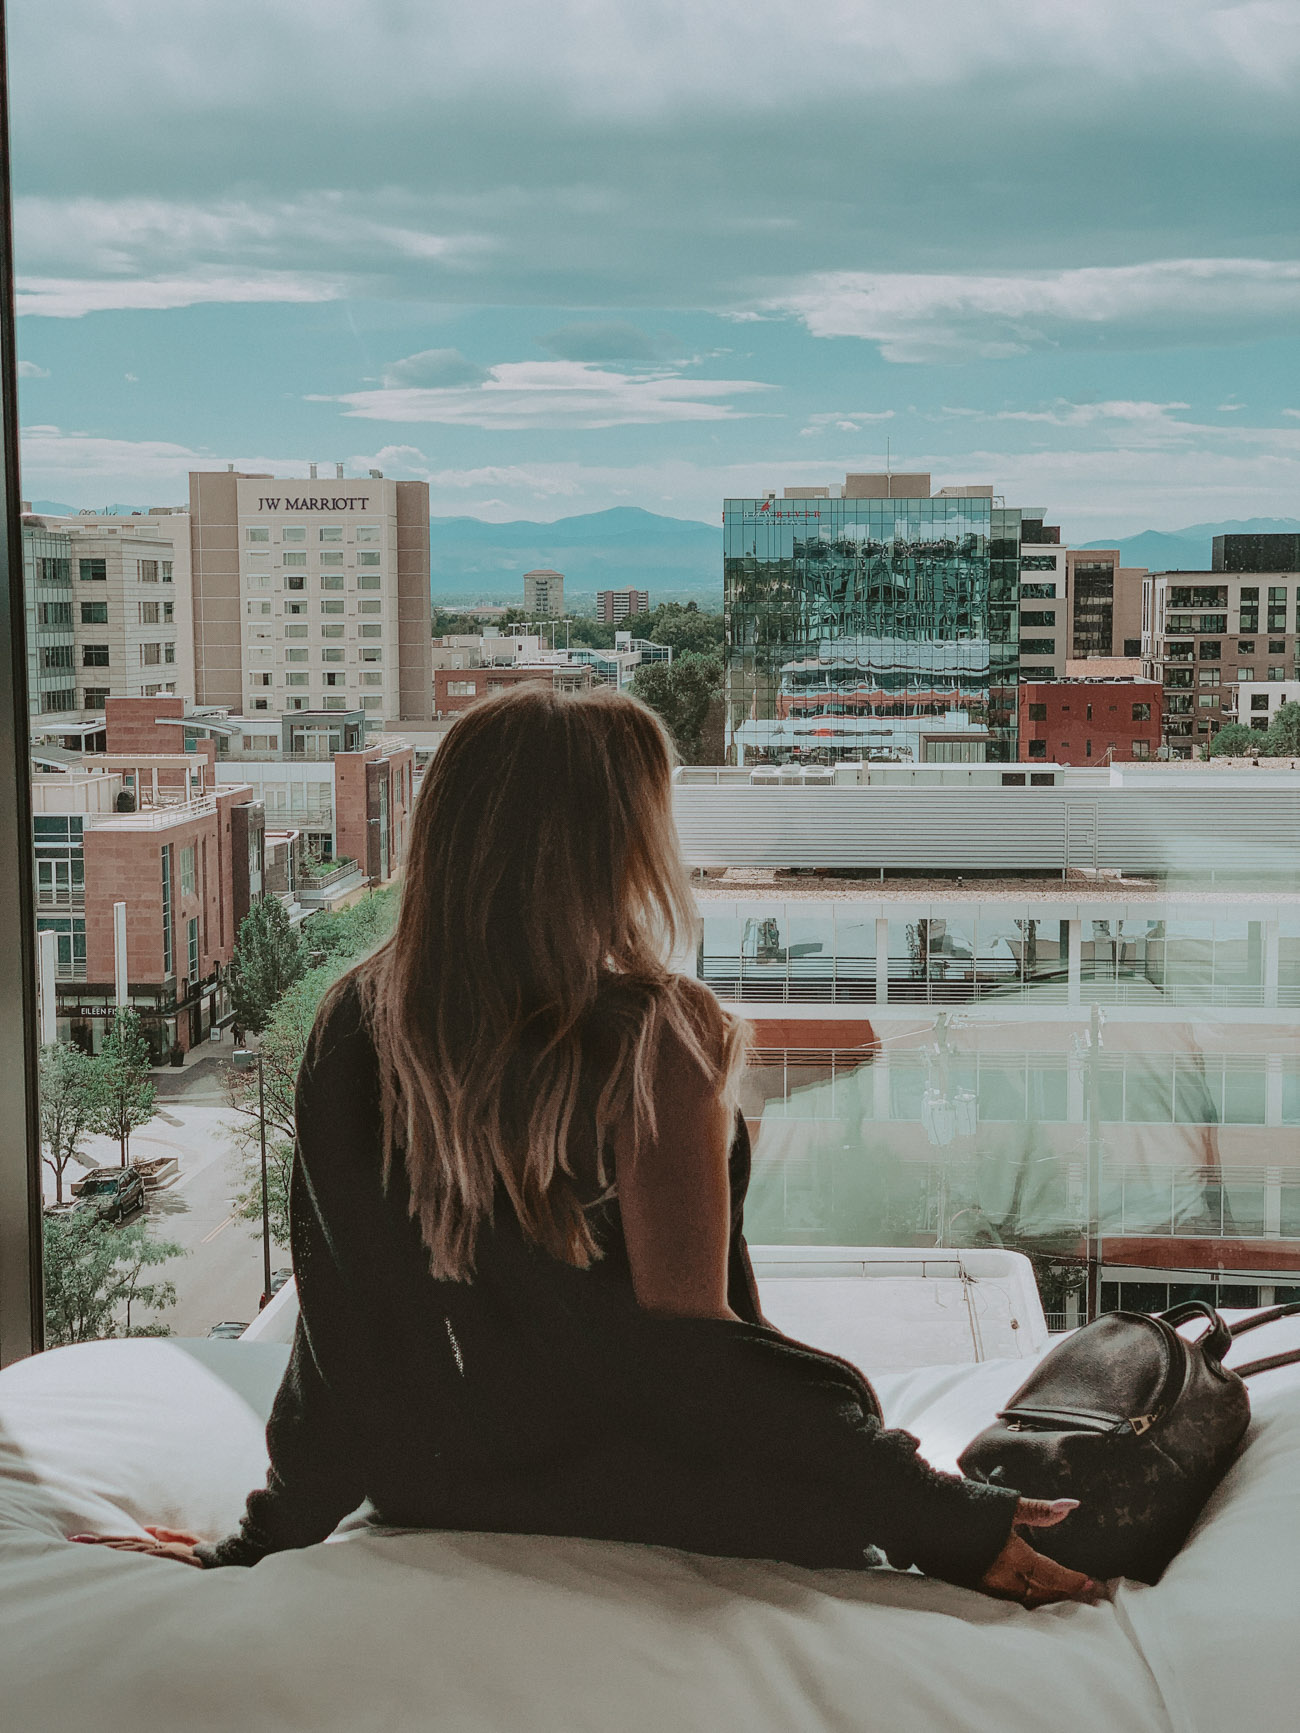 Trip to Colorado | Vail, Colorado & Denver, Colorado | Hotels | Travel | Blondie in the City by Hayley Larue